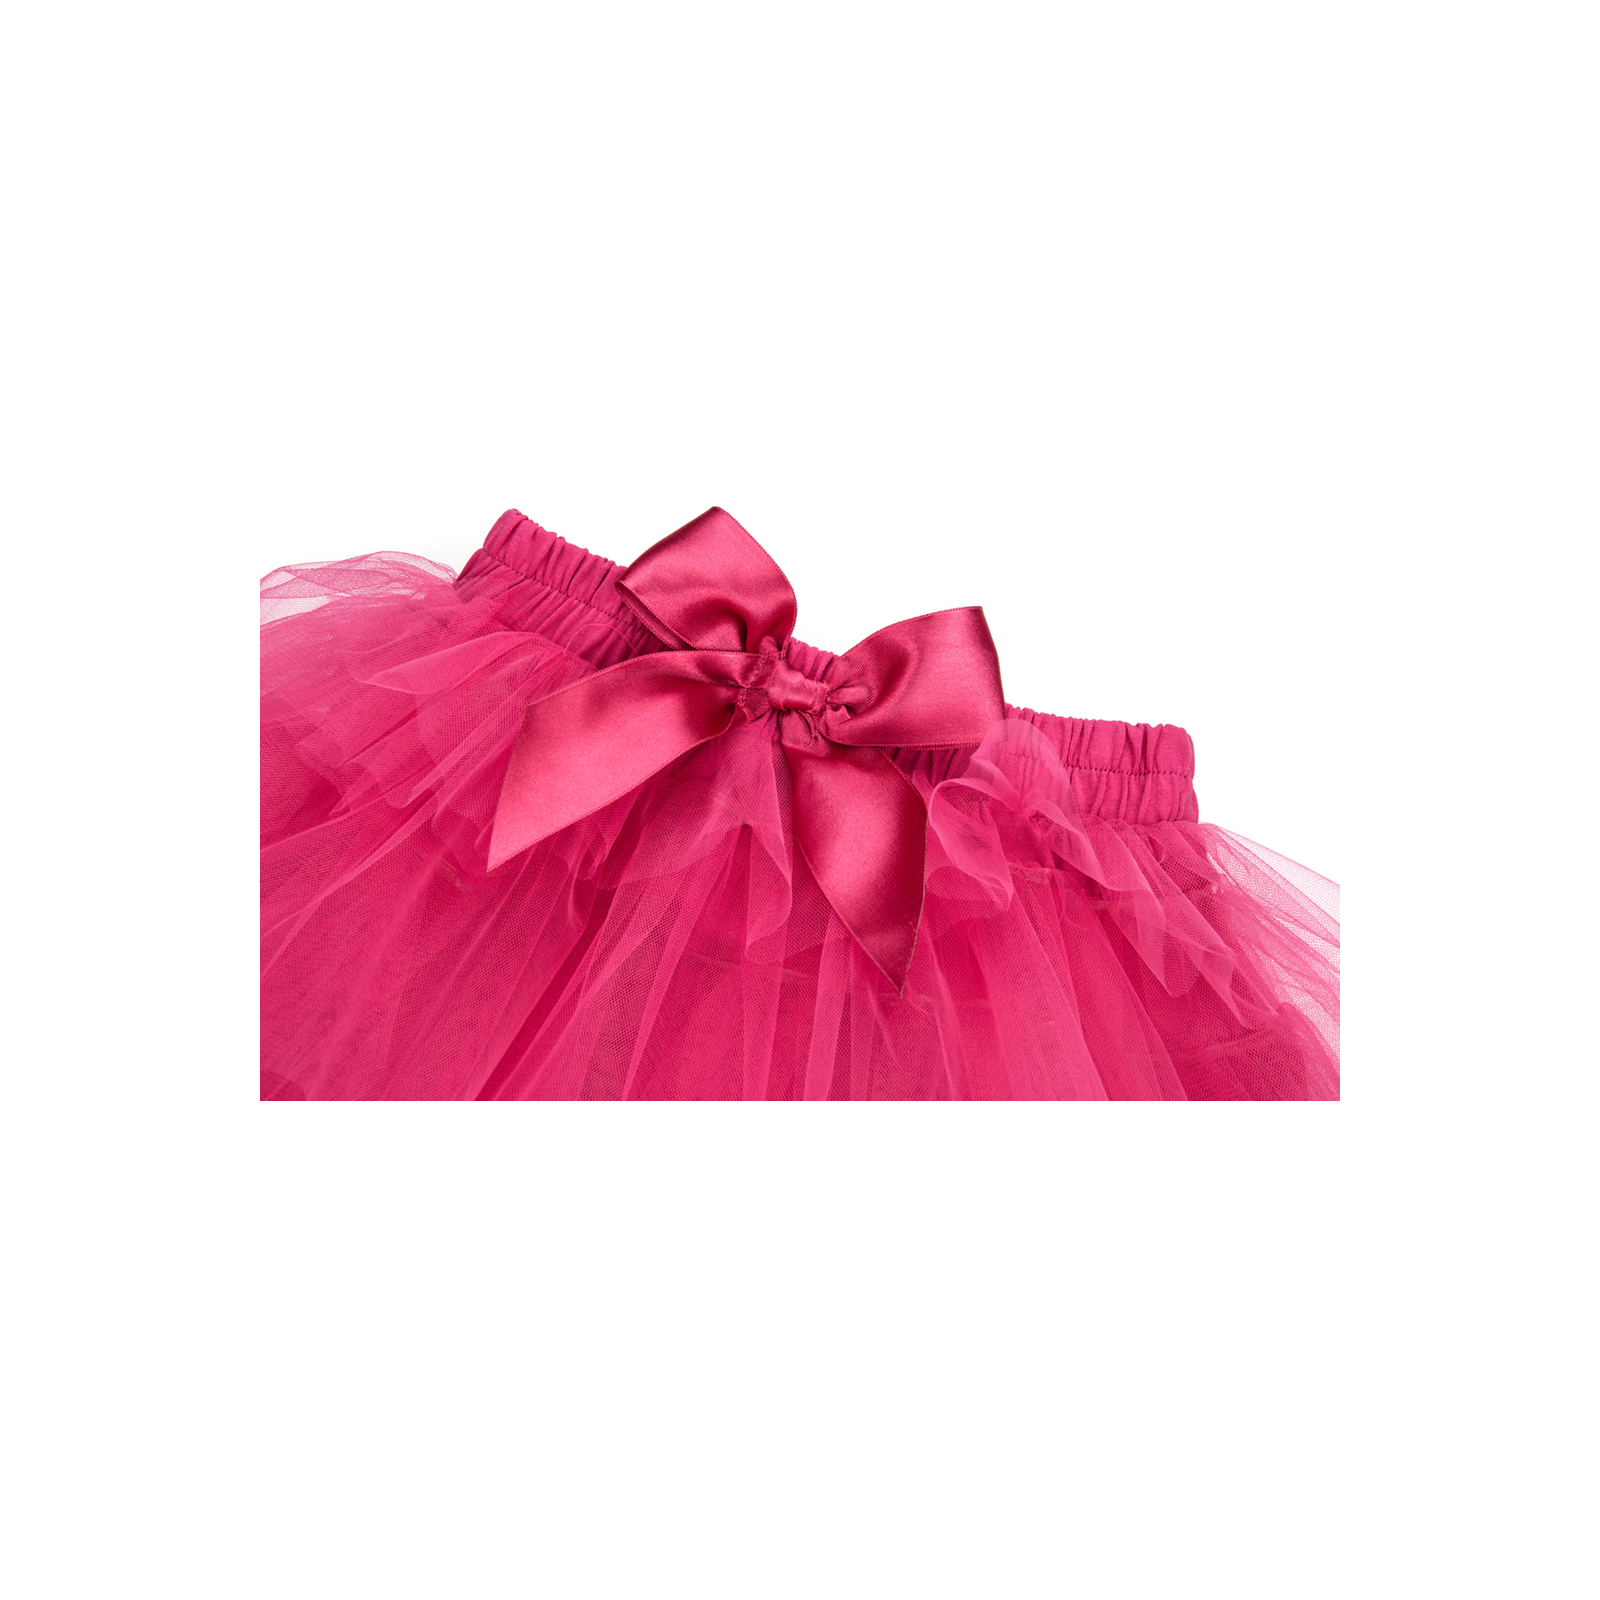 Юбка Breeze фатиновая многослойная (5338-122G-pink) изображение 2